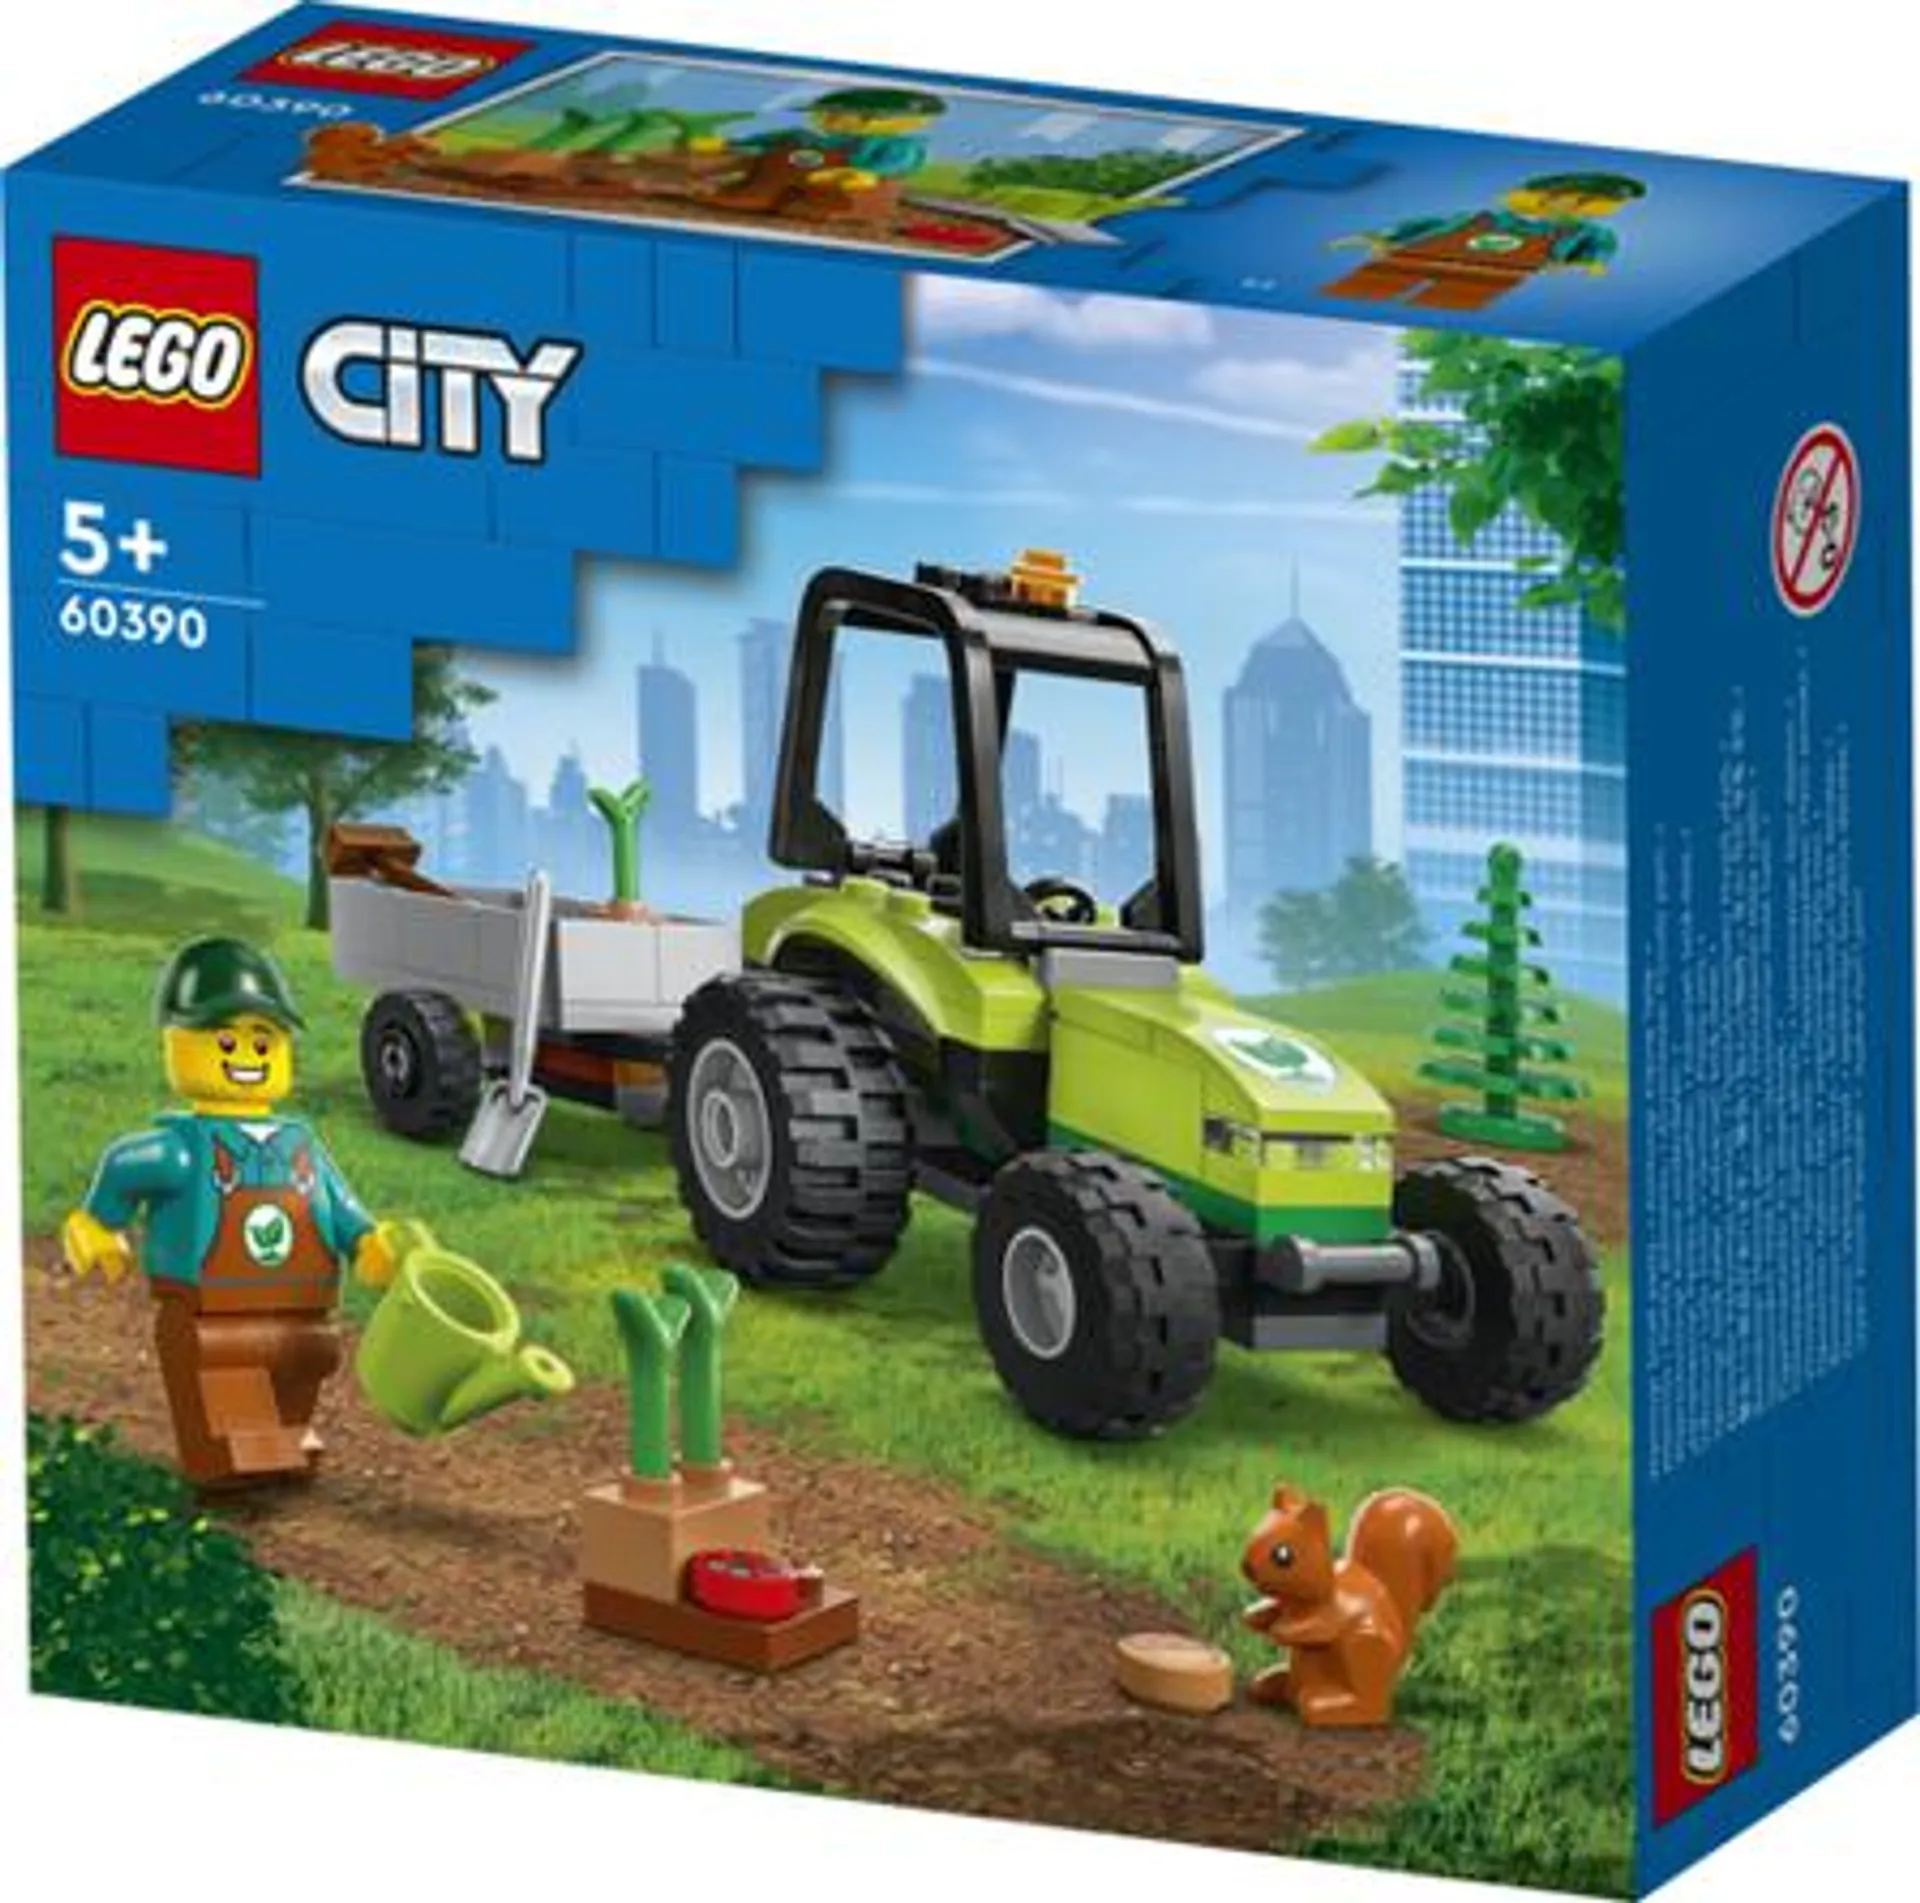 60390 LEGO CITY TRAKTOR W PARKU 5702017416458